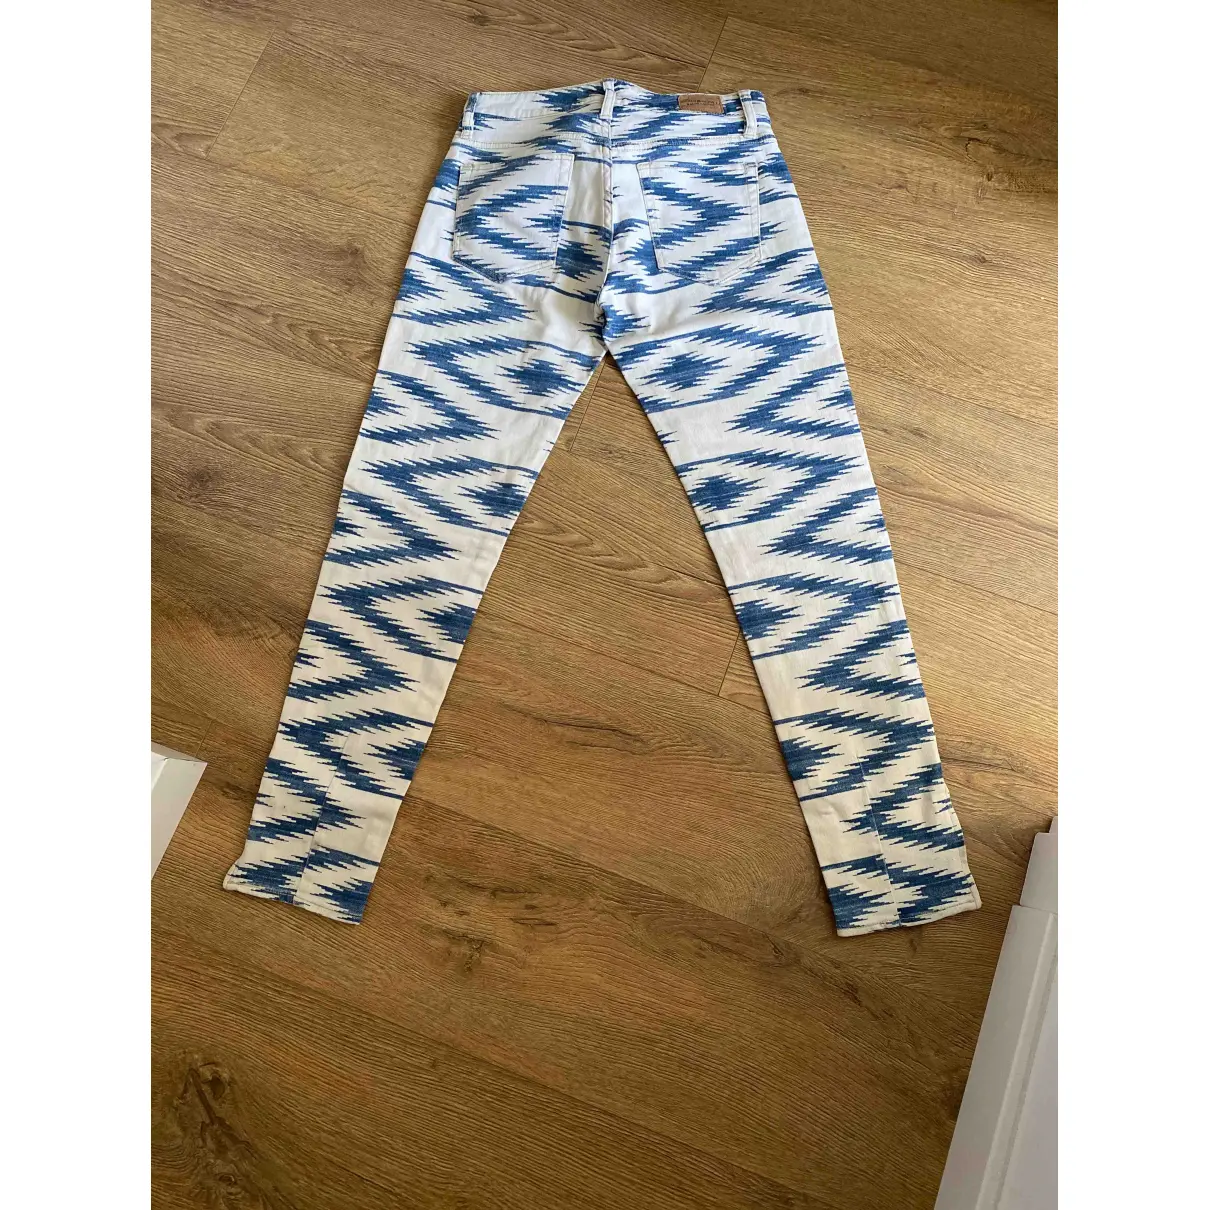 Buy Ralph Lauren Denim & Supply Large pants online